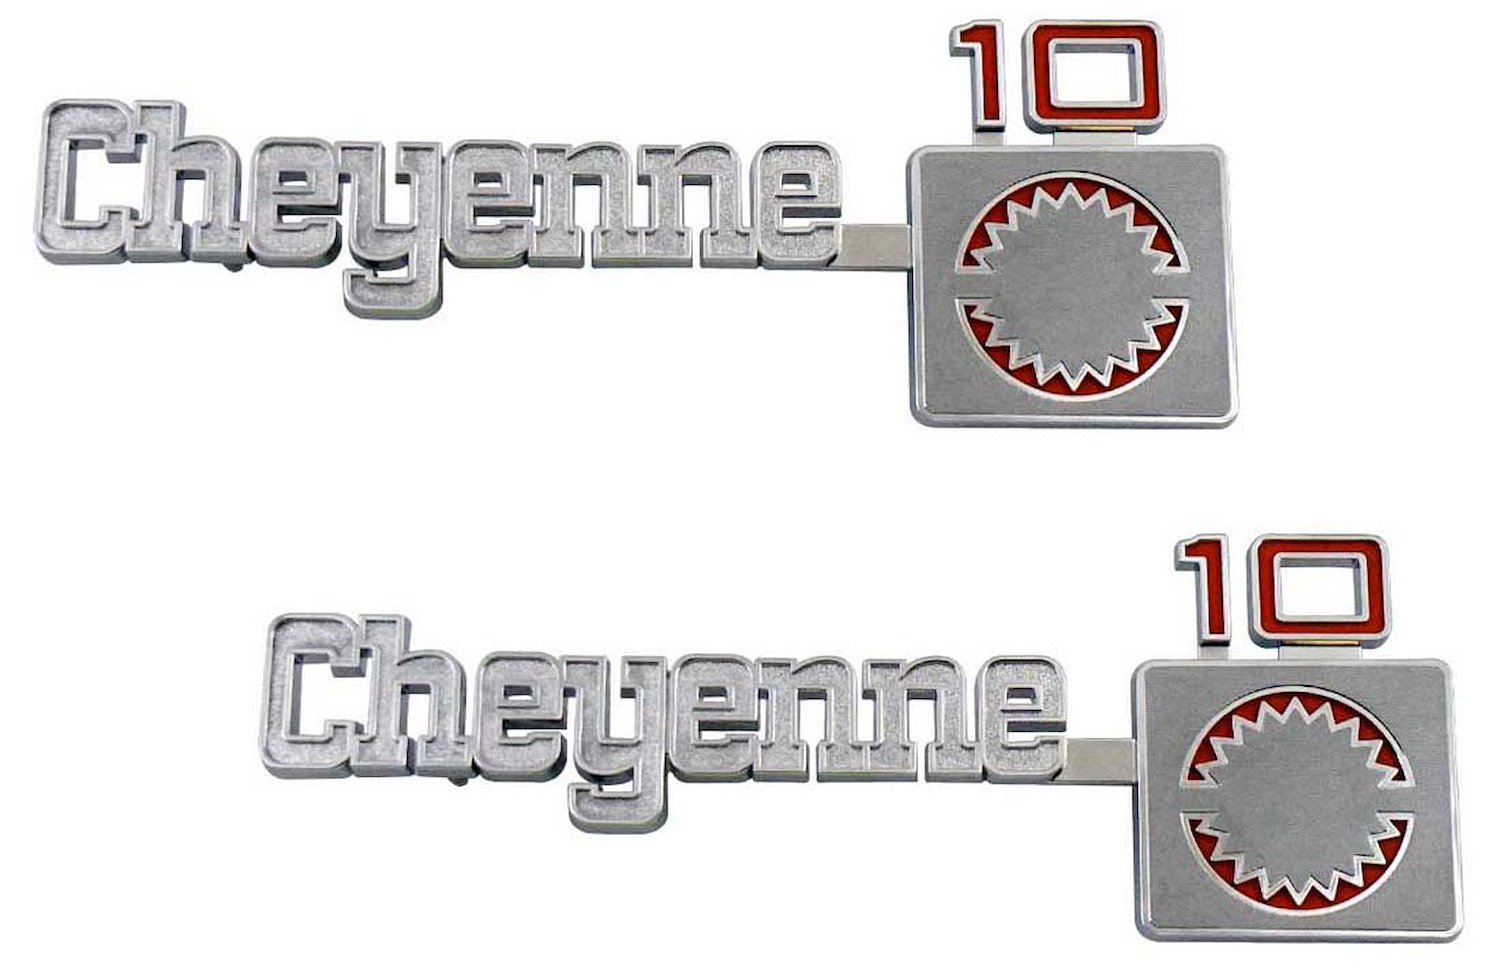 Front Fender Emblem Set 1975-1980 Chevy Cheyenne 1/2 Ton - "Cheyenne 10"